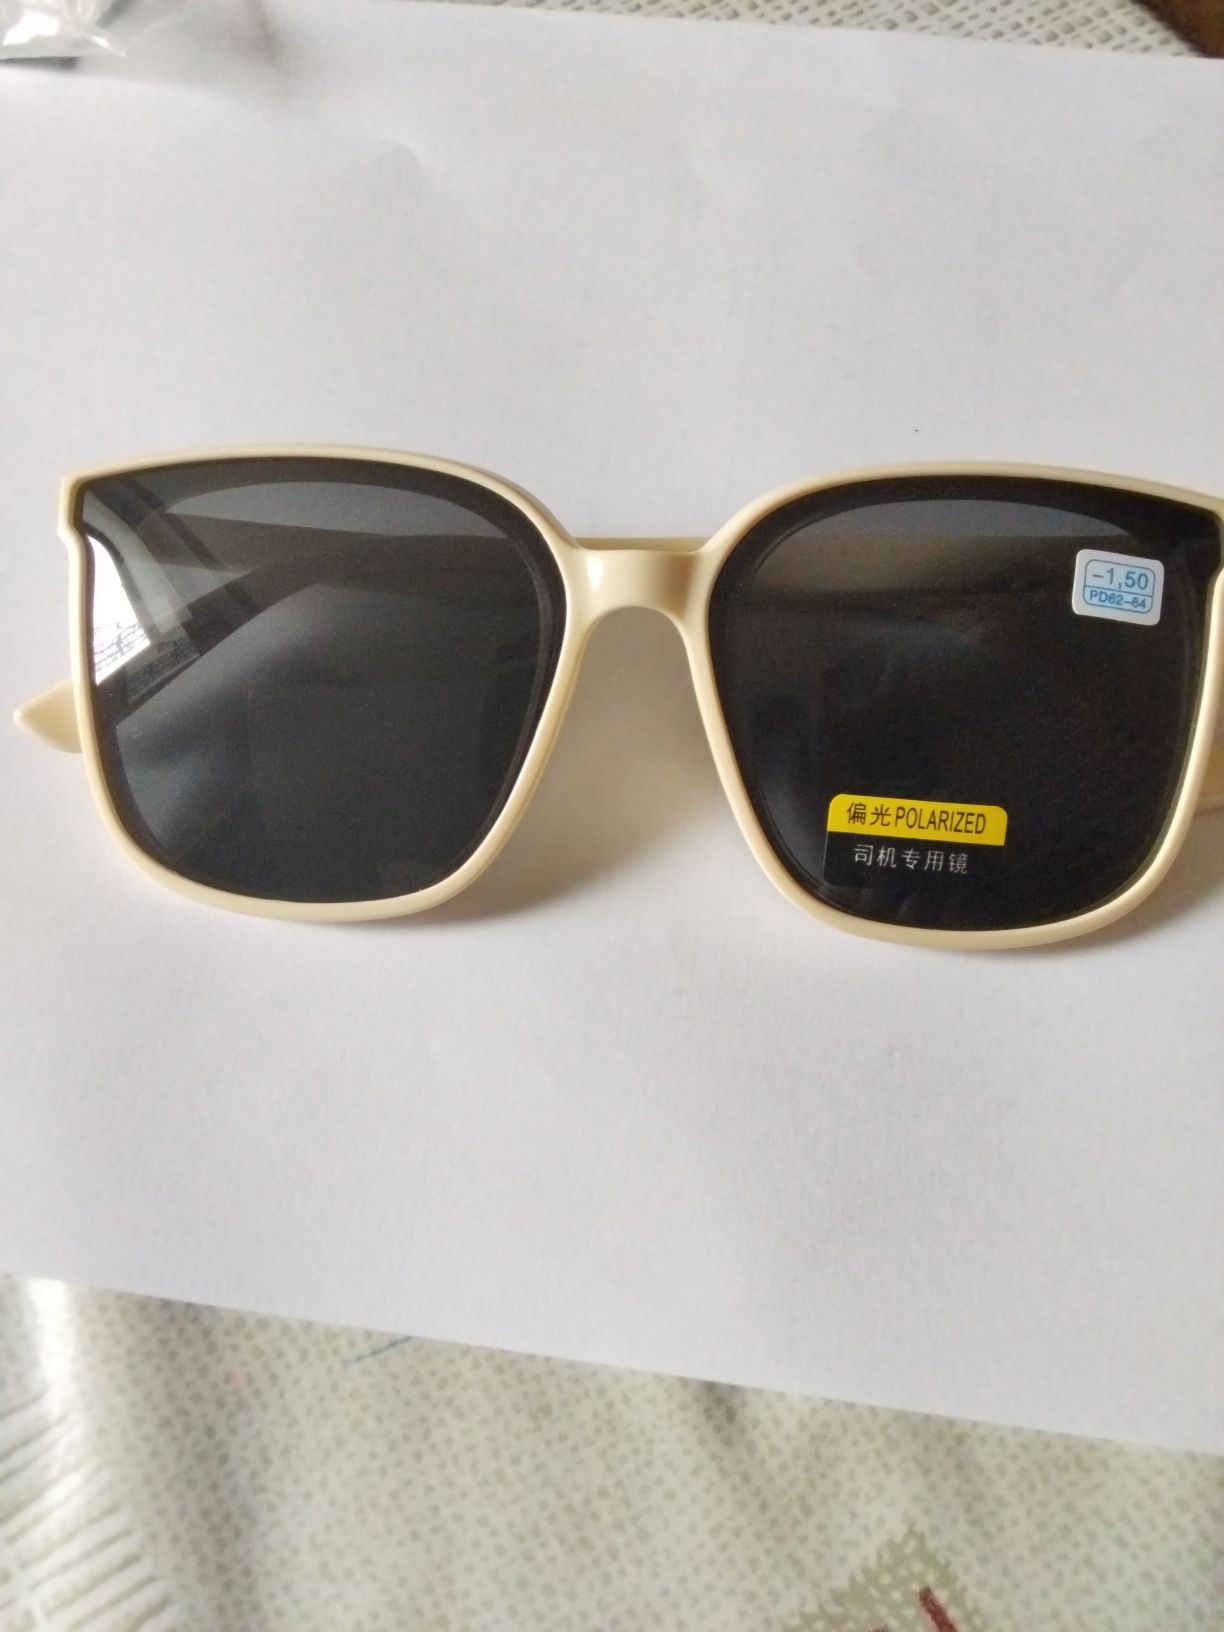 Okulary słoneczne do dali -1.5 PD 62-64mm z polaryzacją